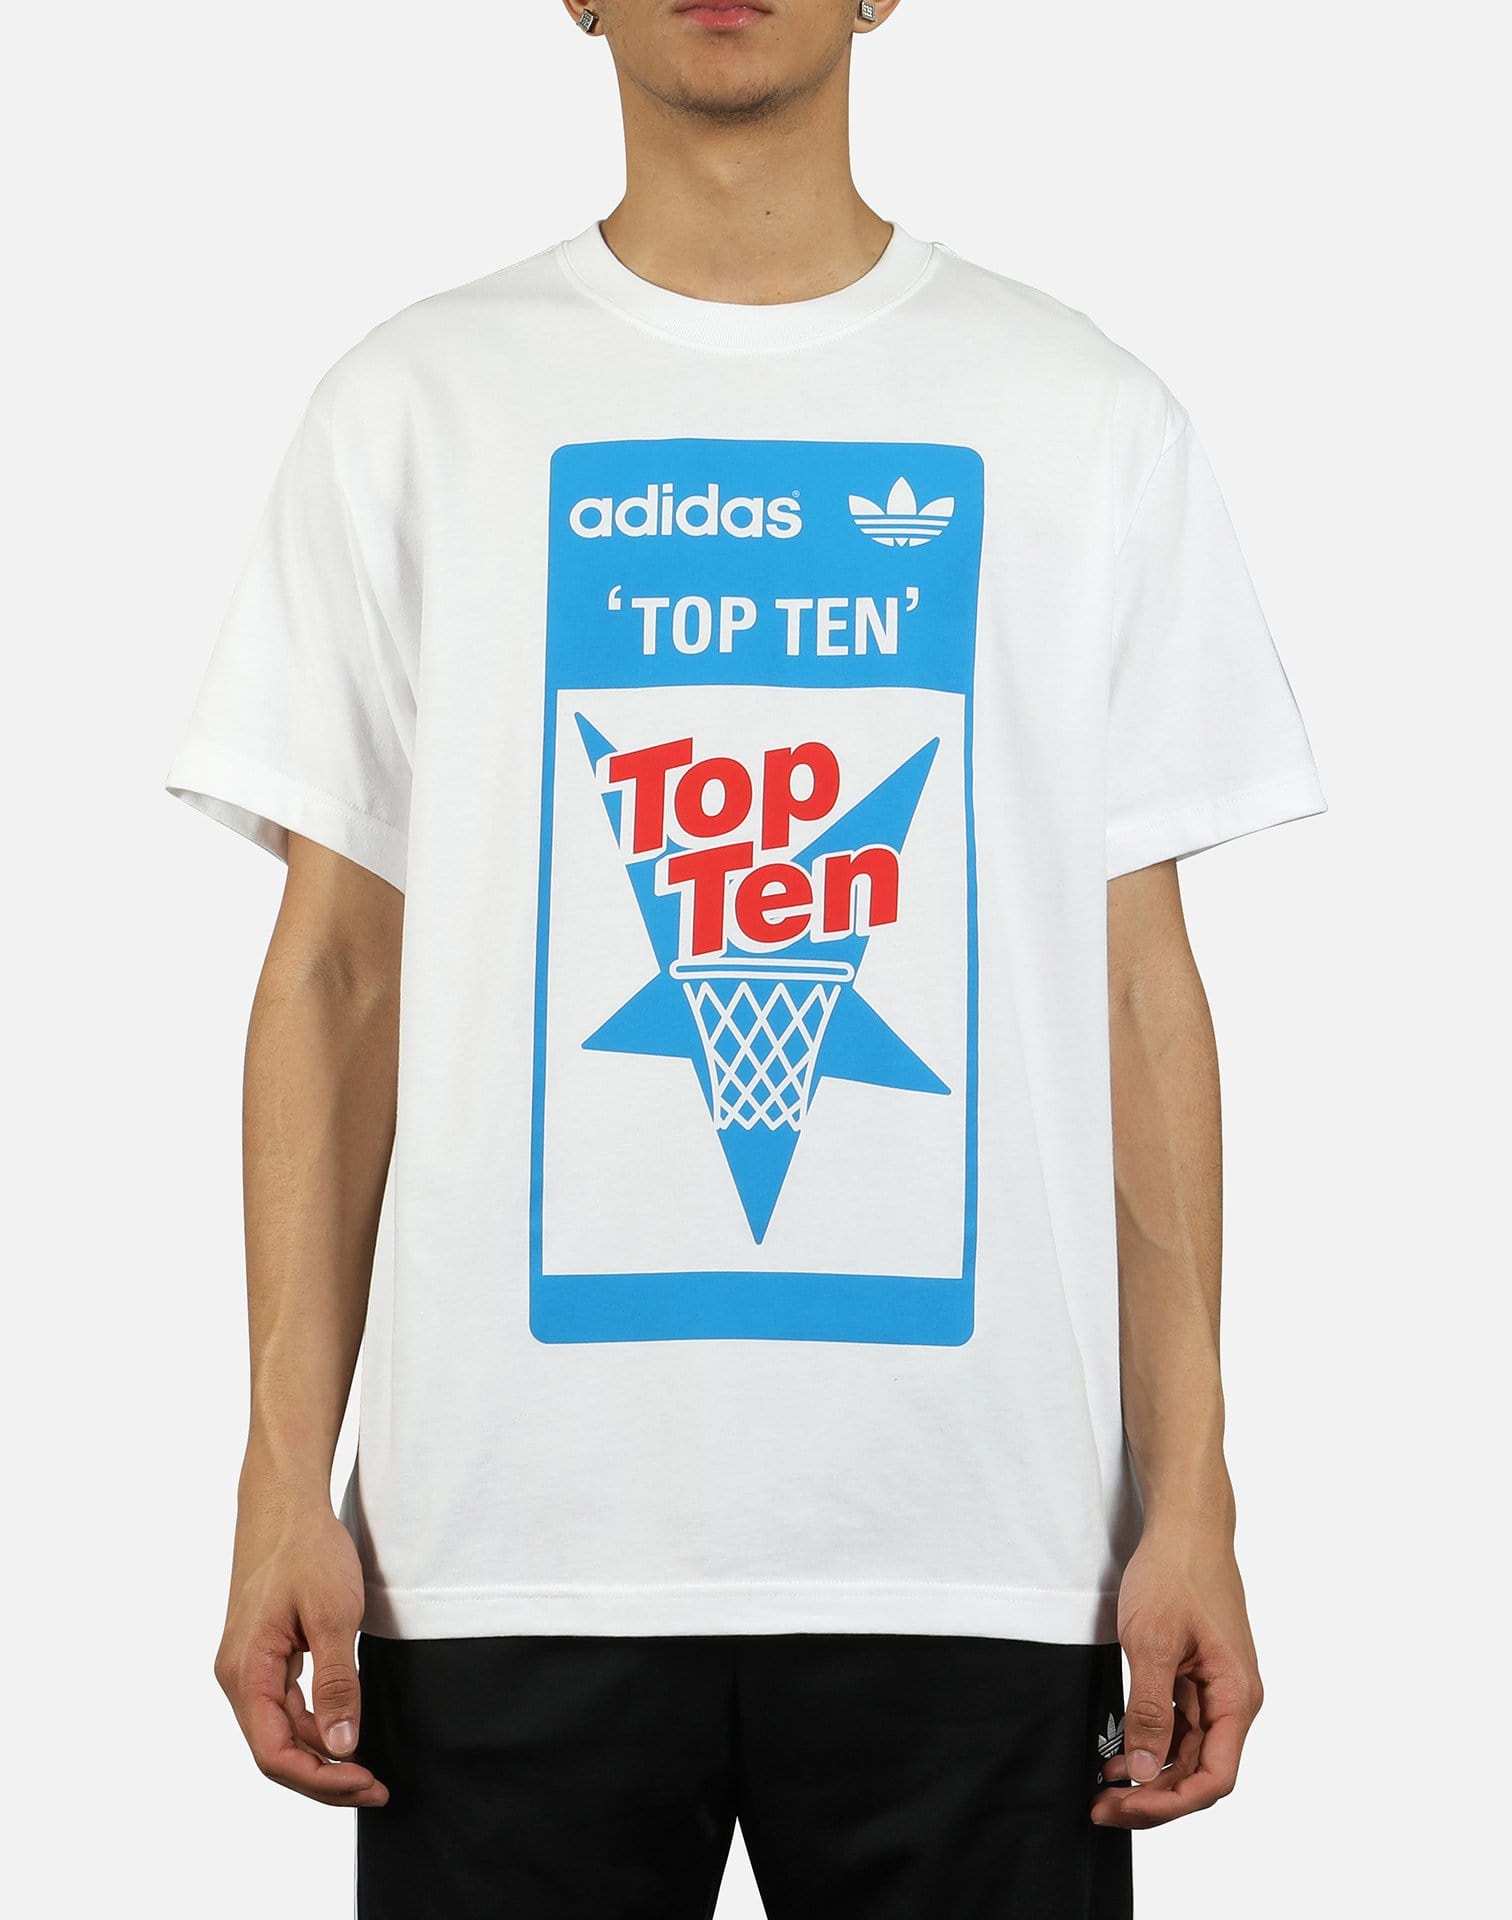 Adidas Men's Top Ten Tee